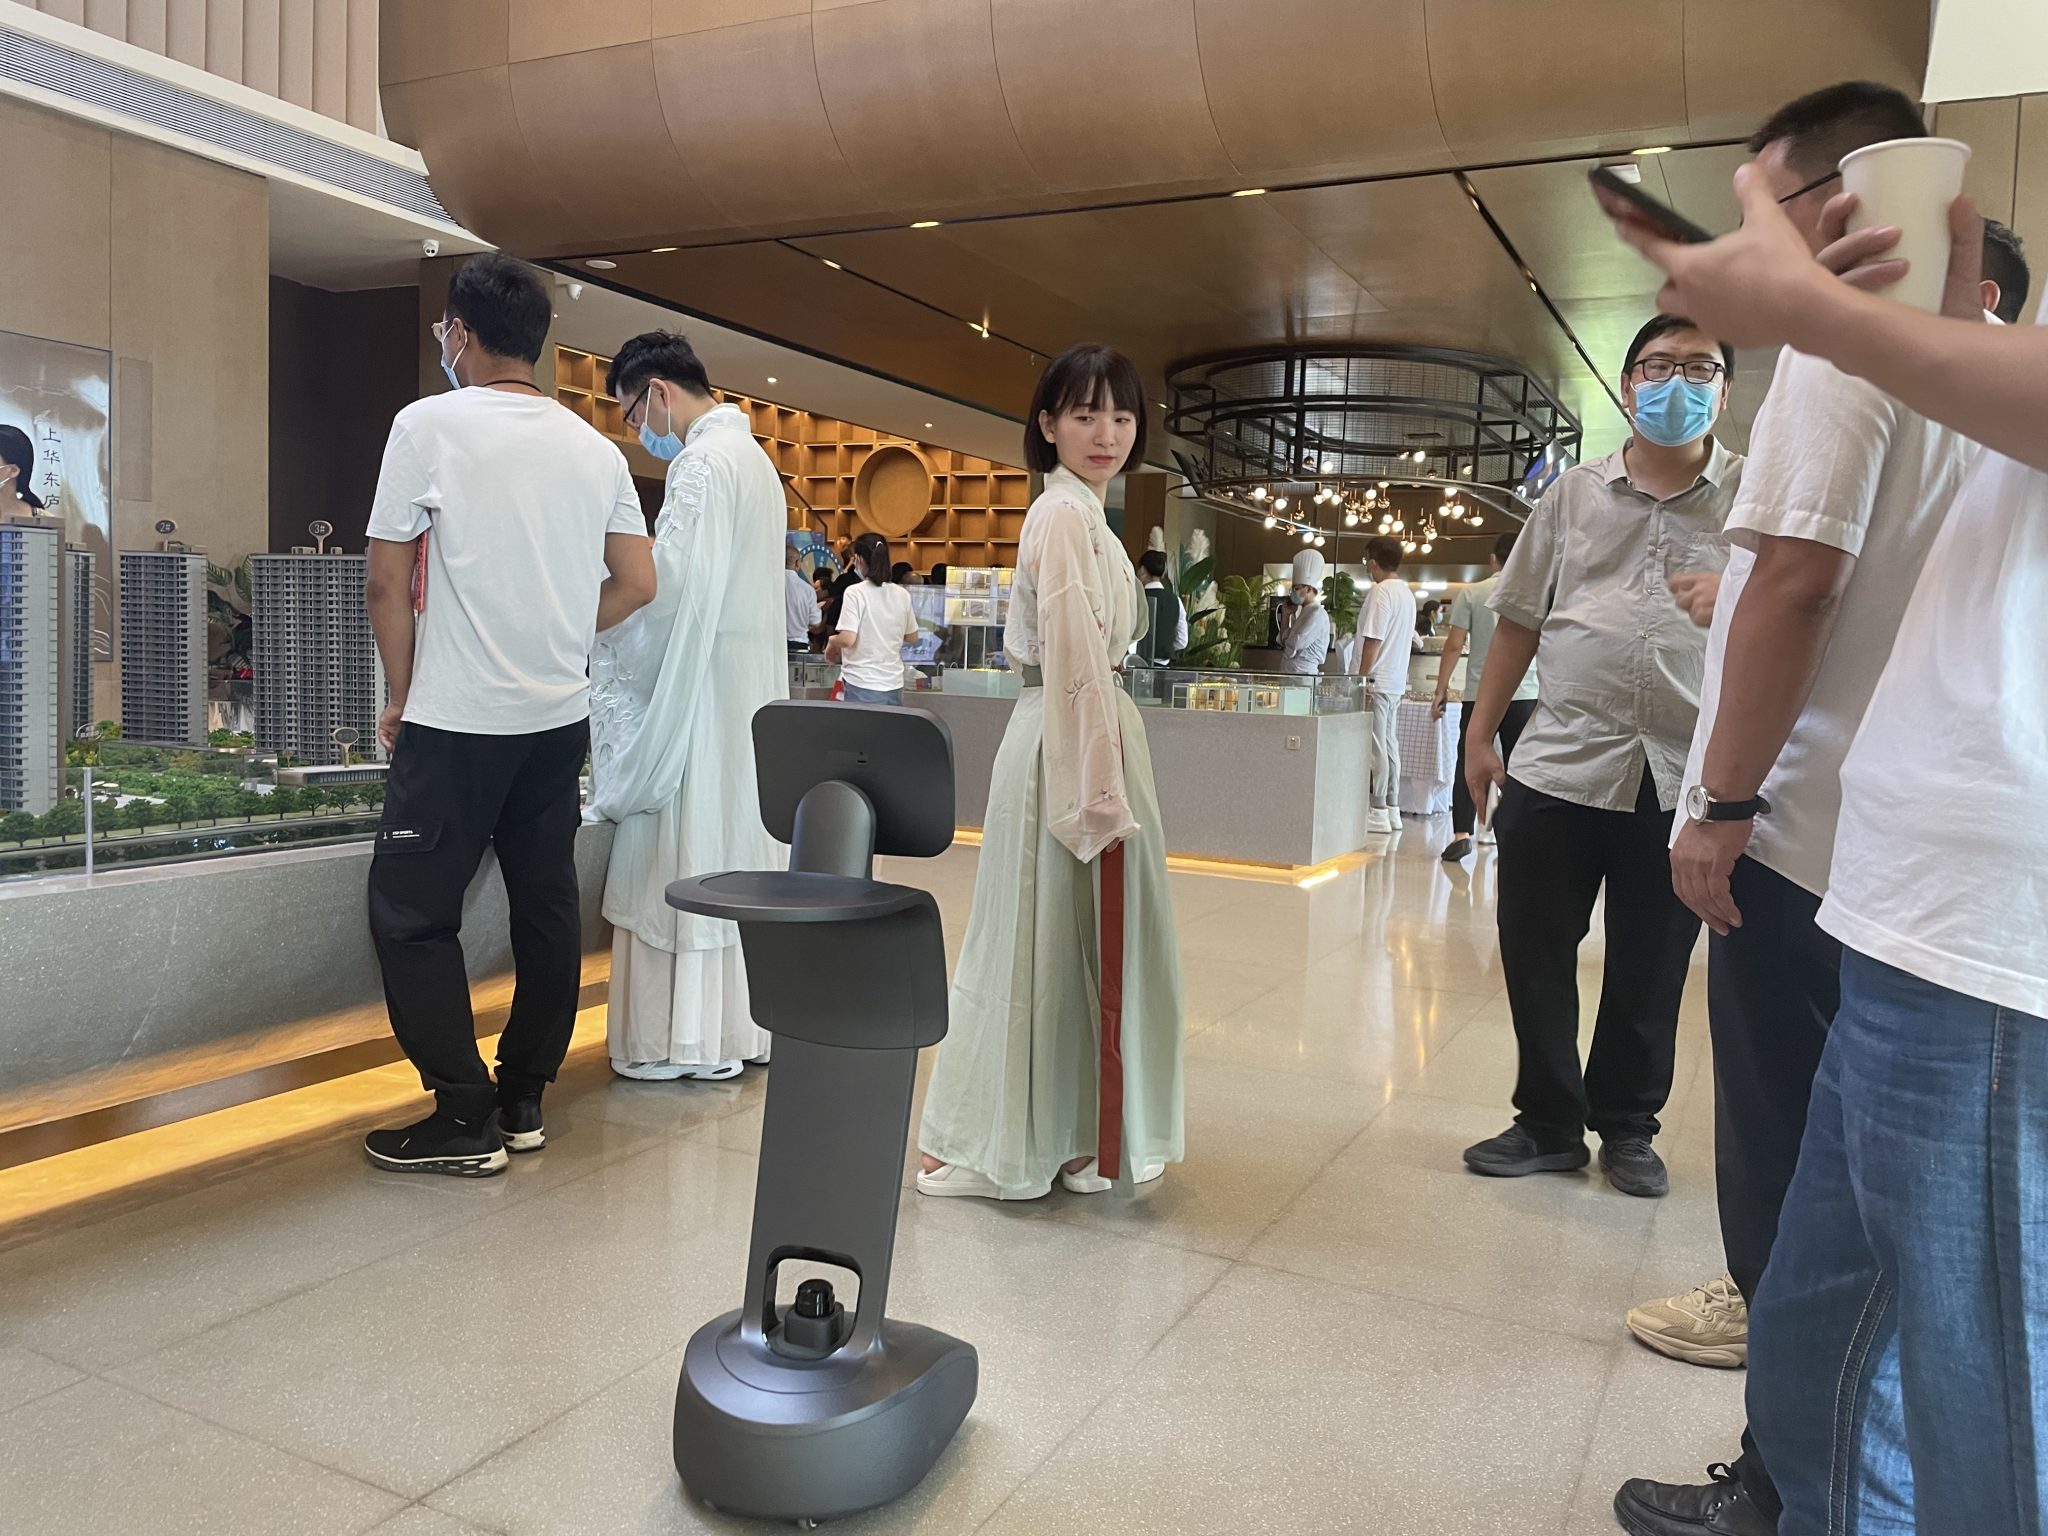 智能机器人temi助力“上华东庐美学生活馆“盛大开放